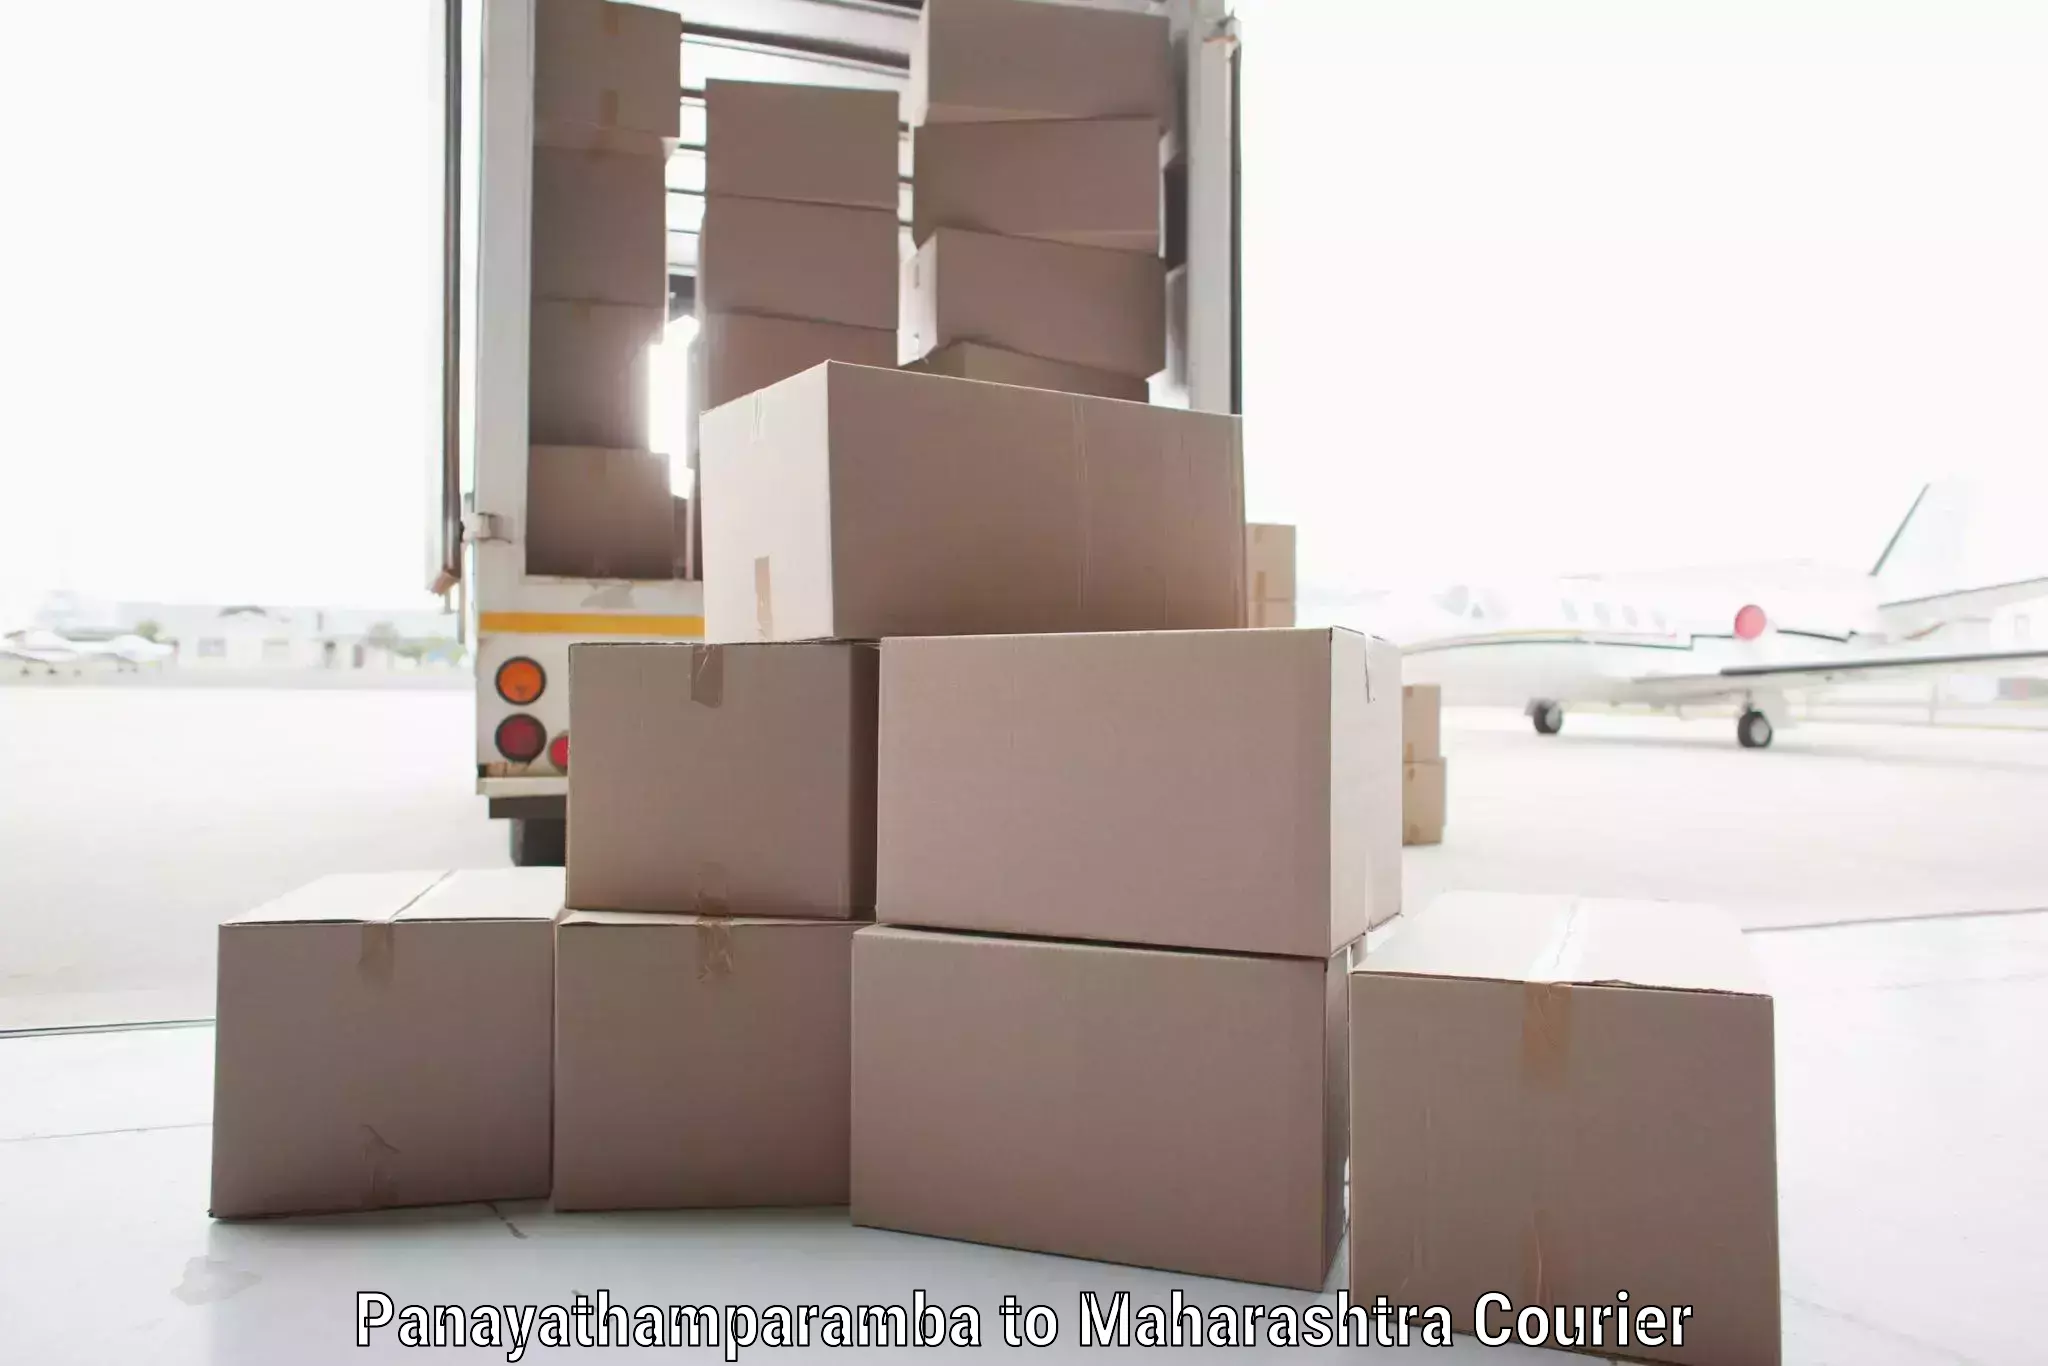 High-performance logistics Panayathamparamba to Mayani